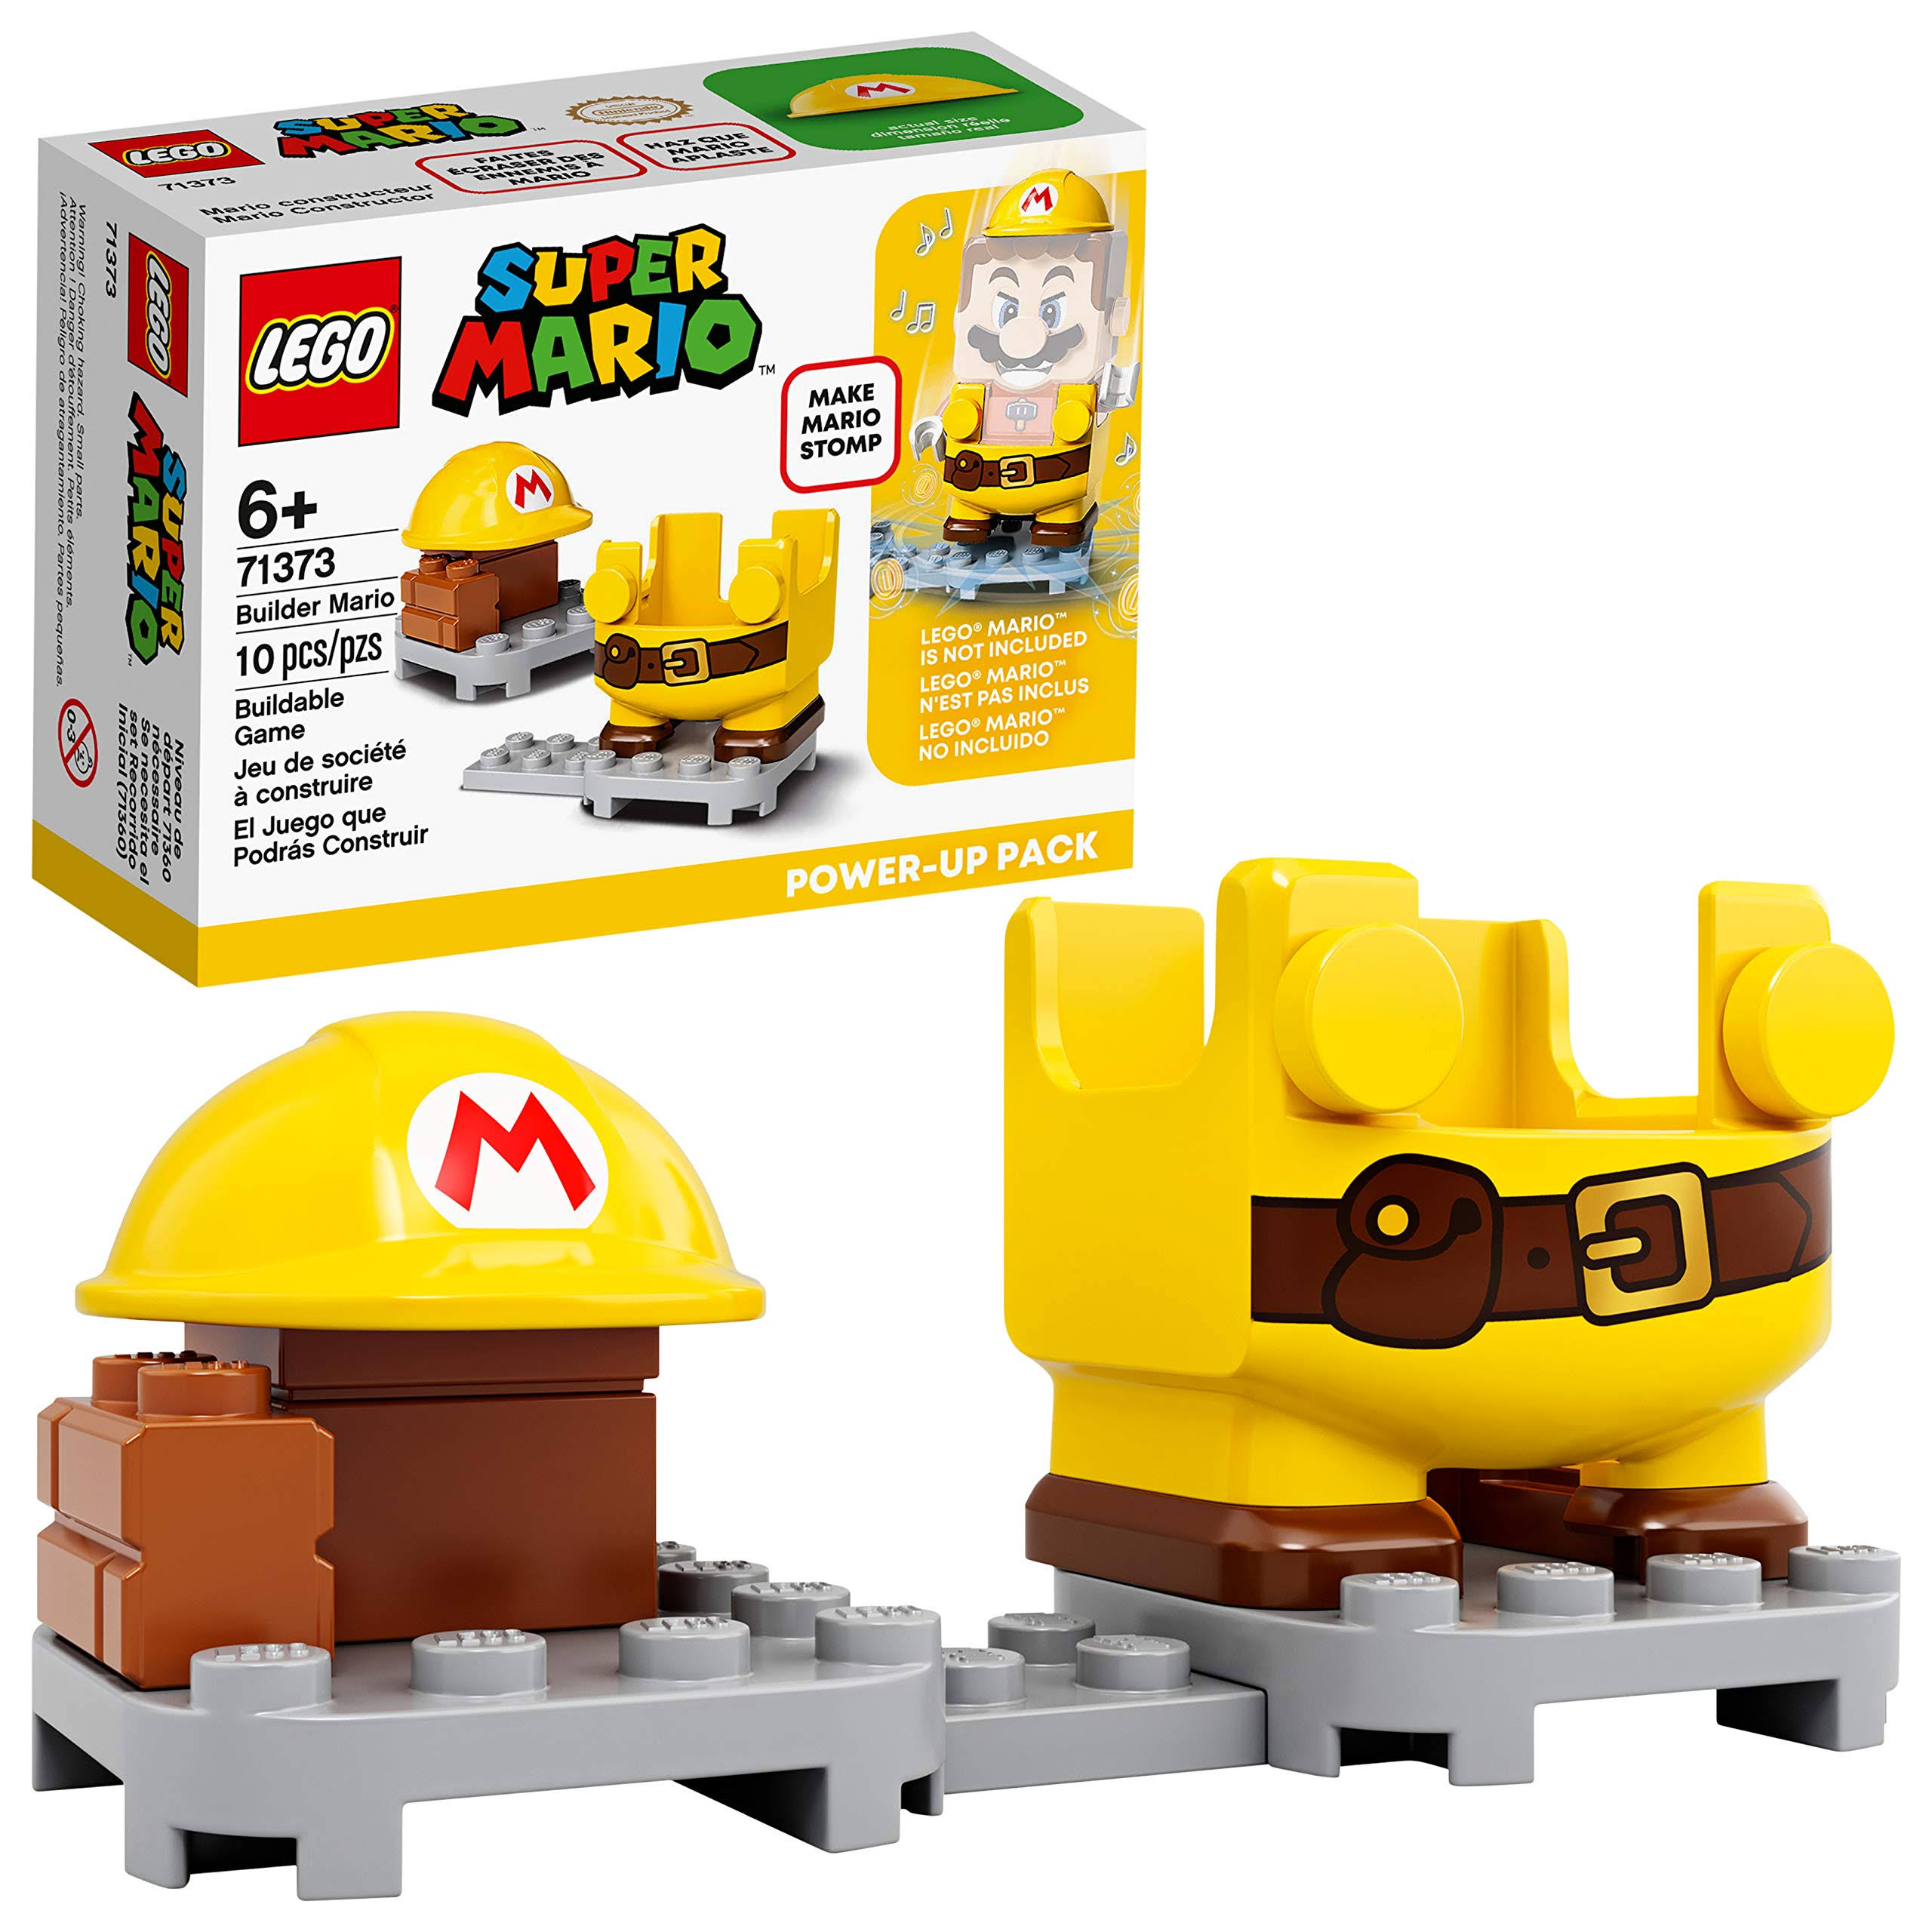 LEGO Super Mario Builder Mario Power-Up Pack - 71373